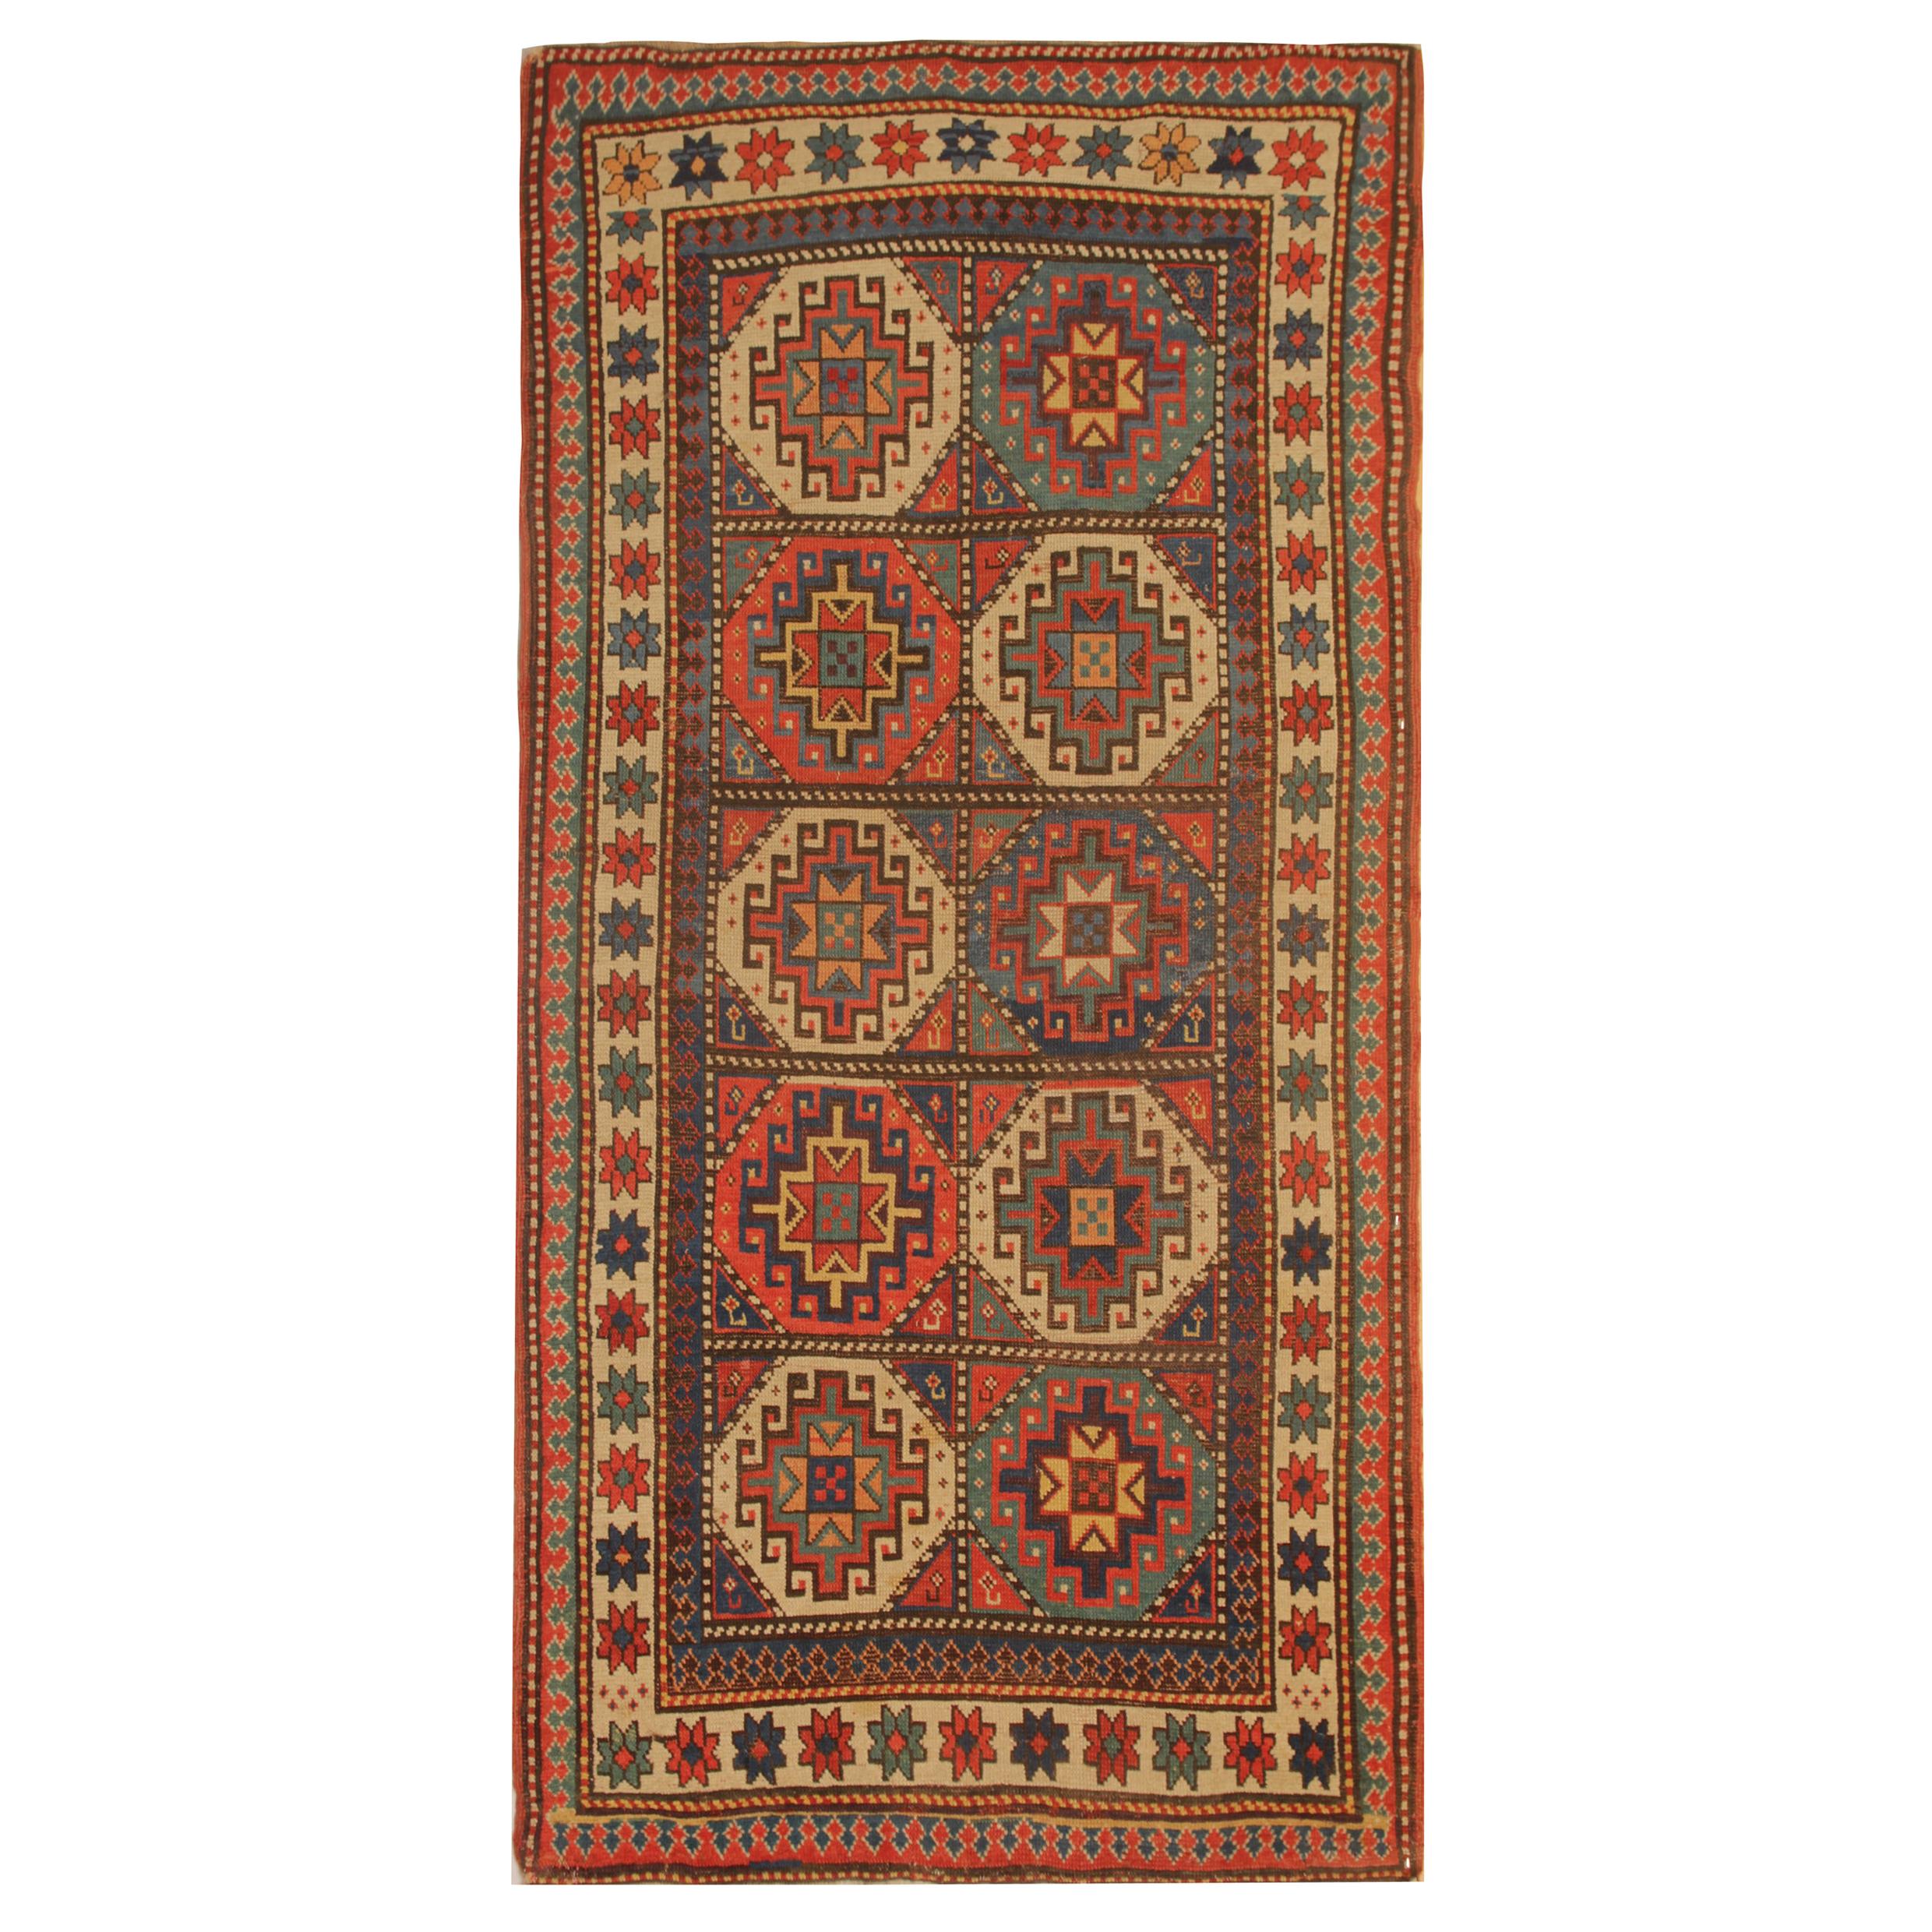 Seltener antiker kaukasischer orientalischer Teppich, handgefertigter Teppich aus Kasachstan-Teppich